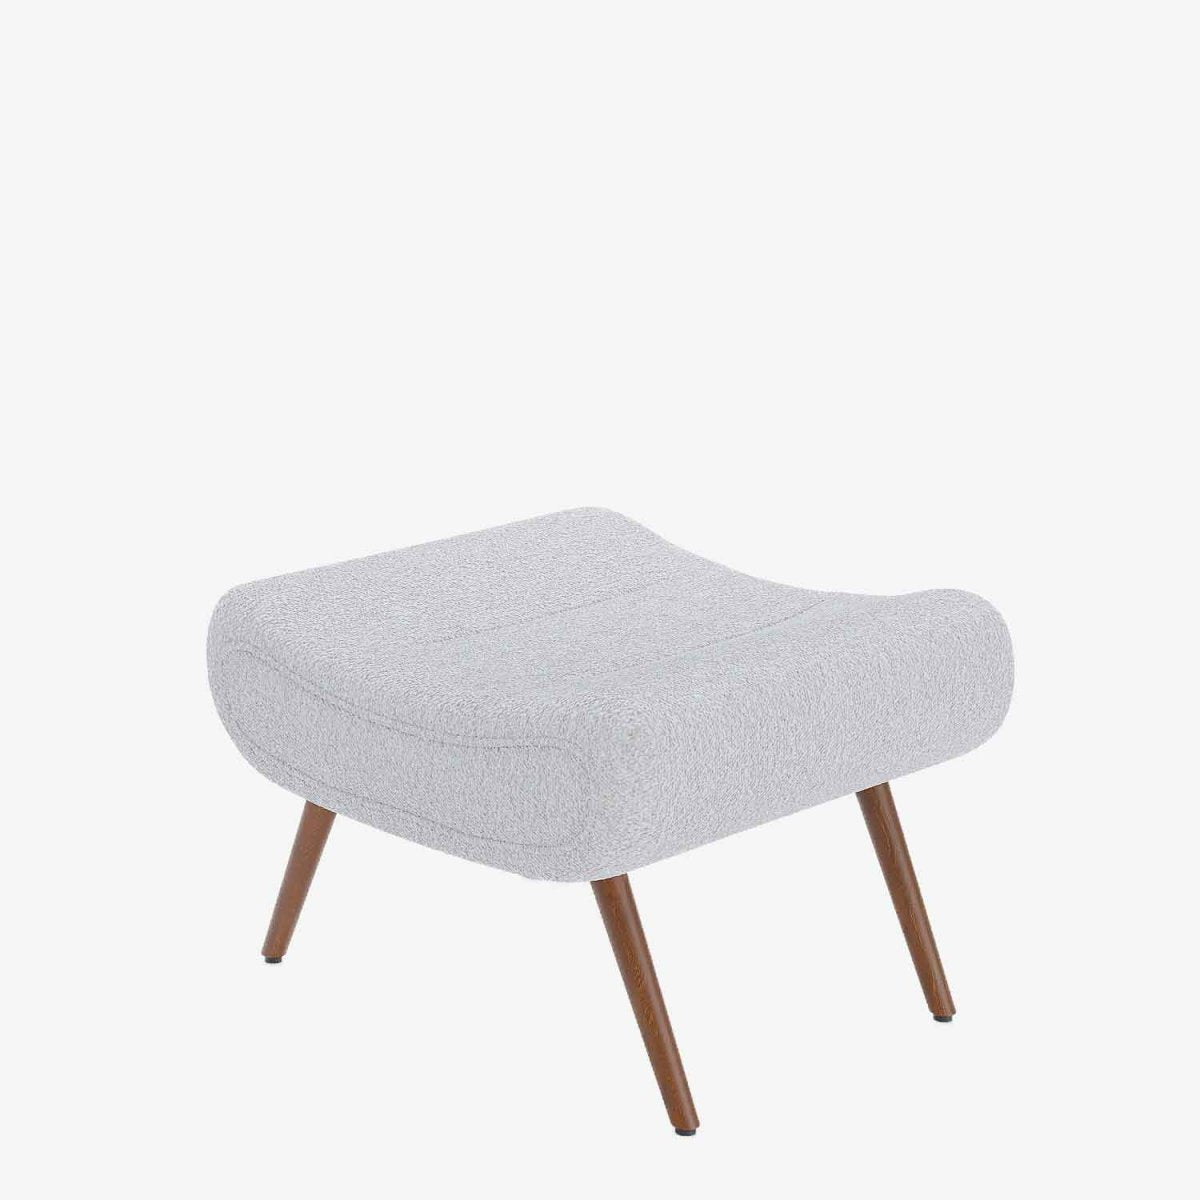 Repose-pieds fauteuil scandinave en laine bouclette blanche - Potiron Paris, la satisfaciton des assises design confortables et pas chères